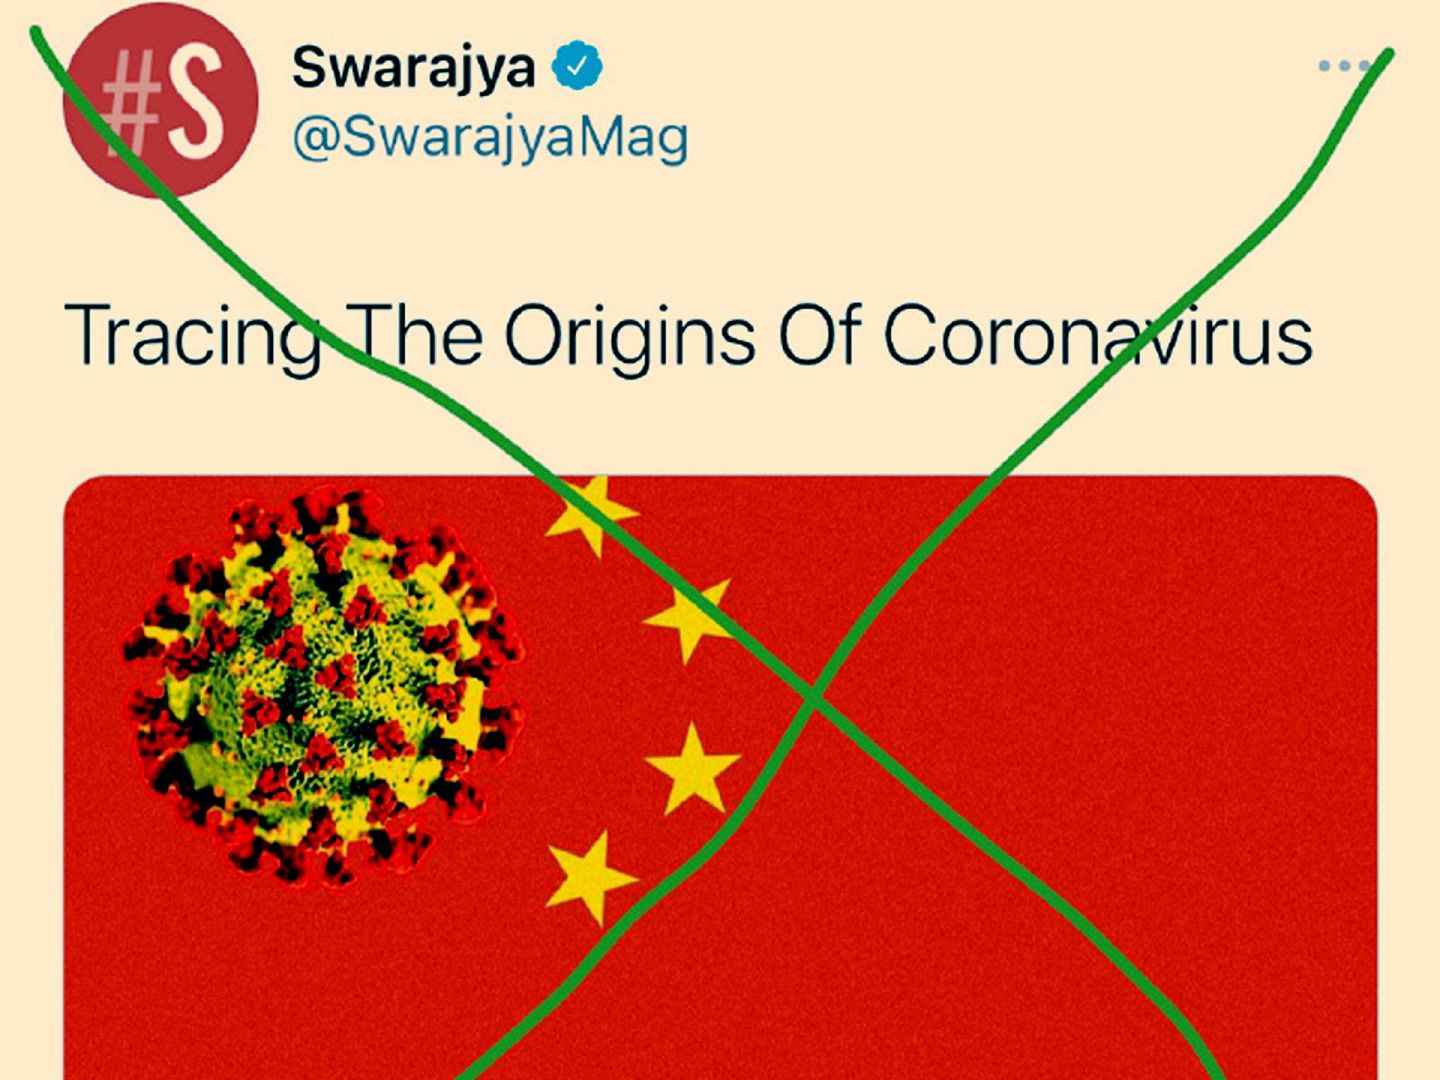 中国网民在转发时画上大大的×号。（Twitter@SwarajyaMag）